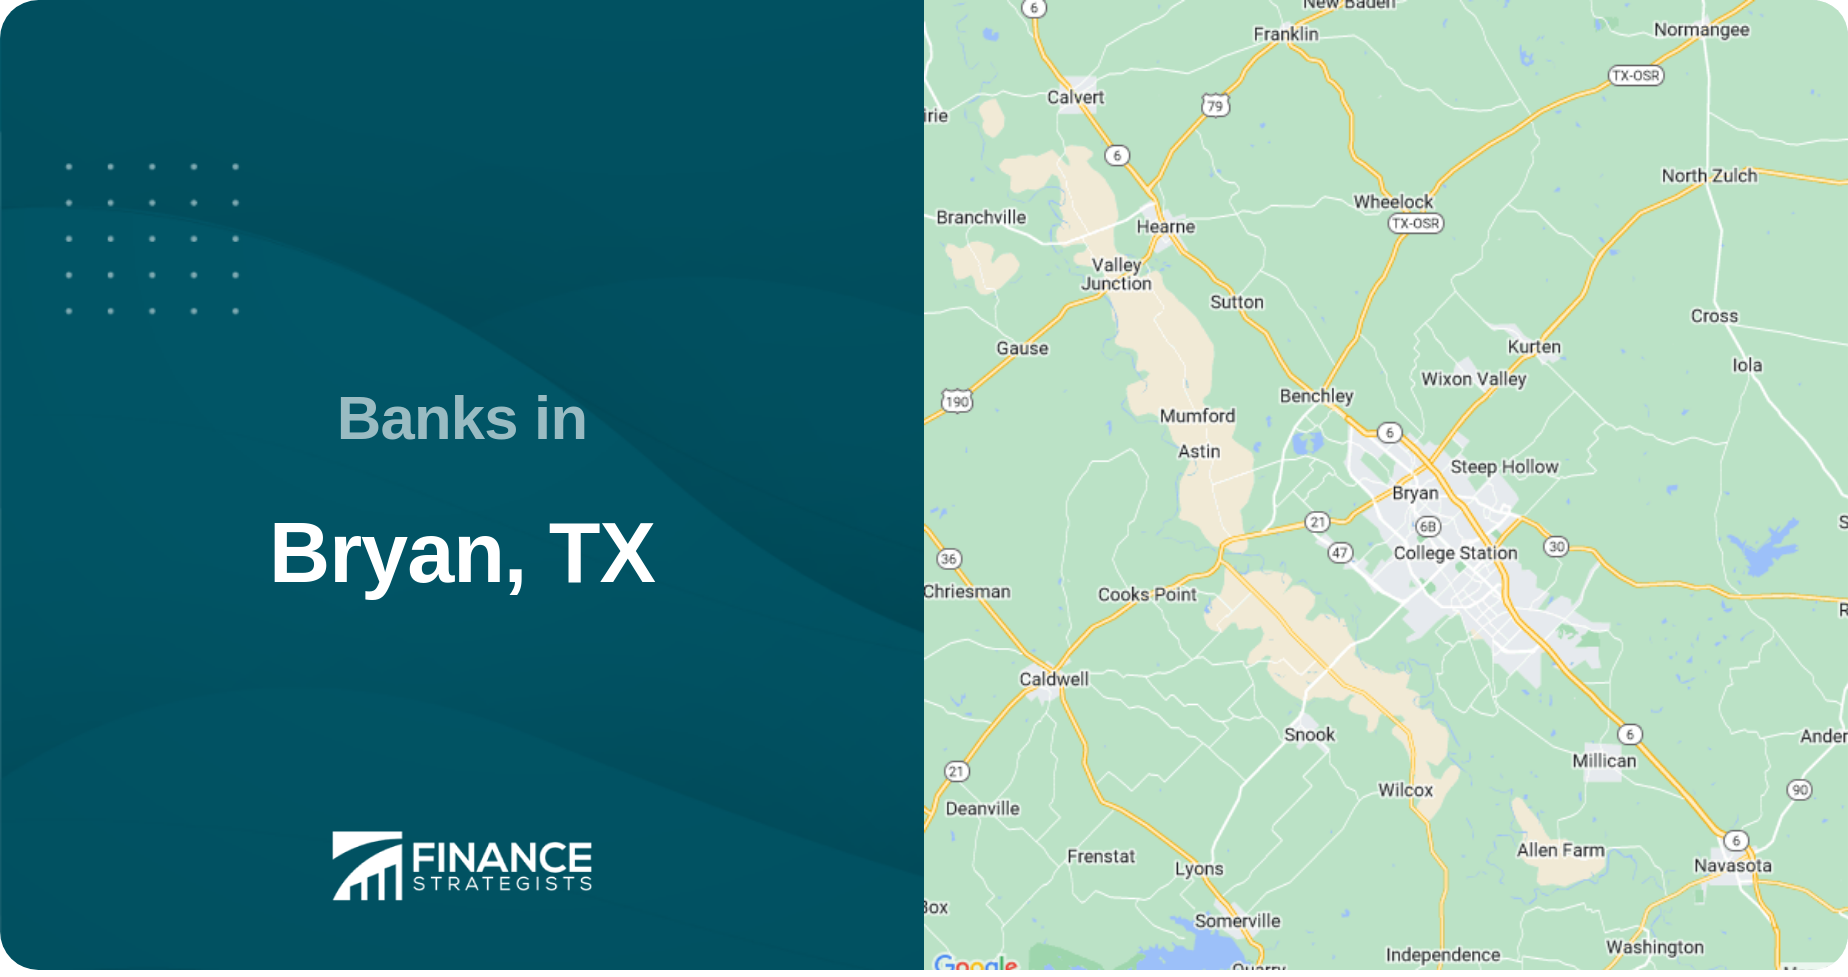 Banks in Bryan, TX